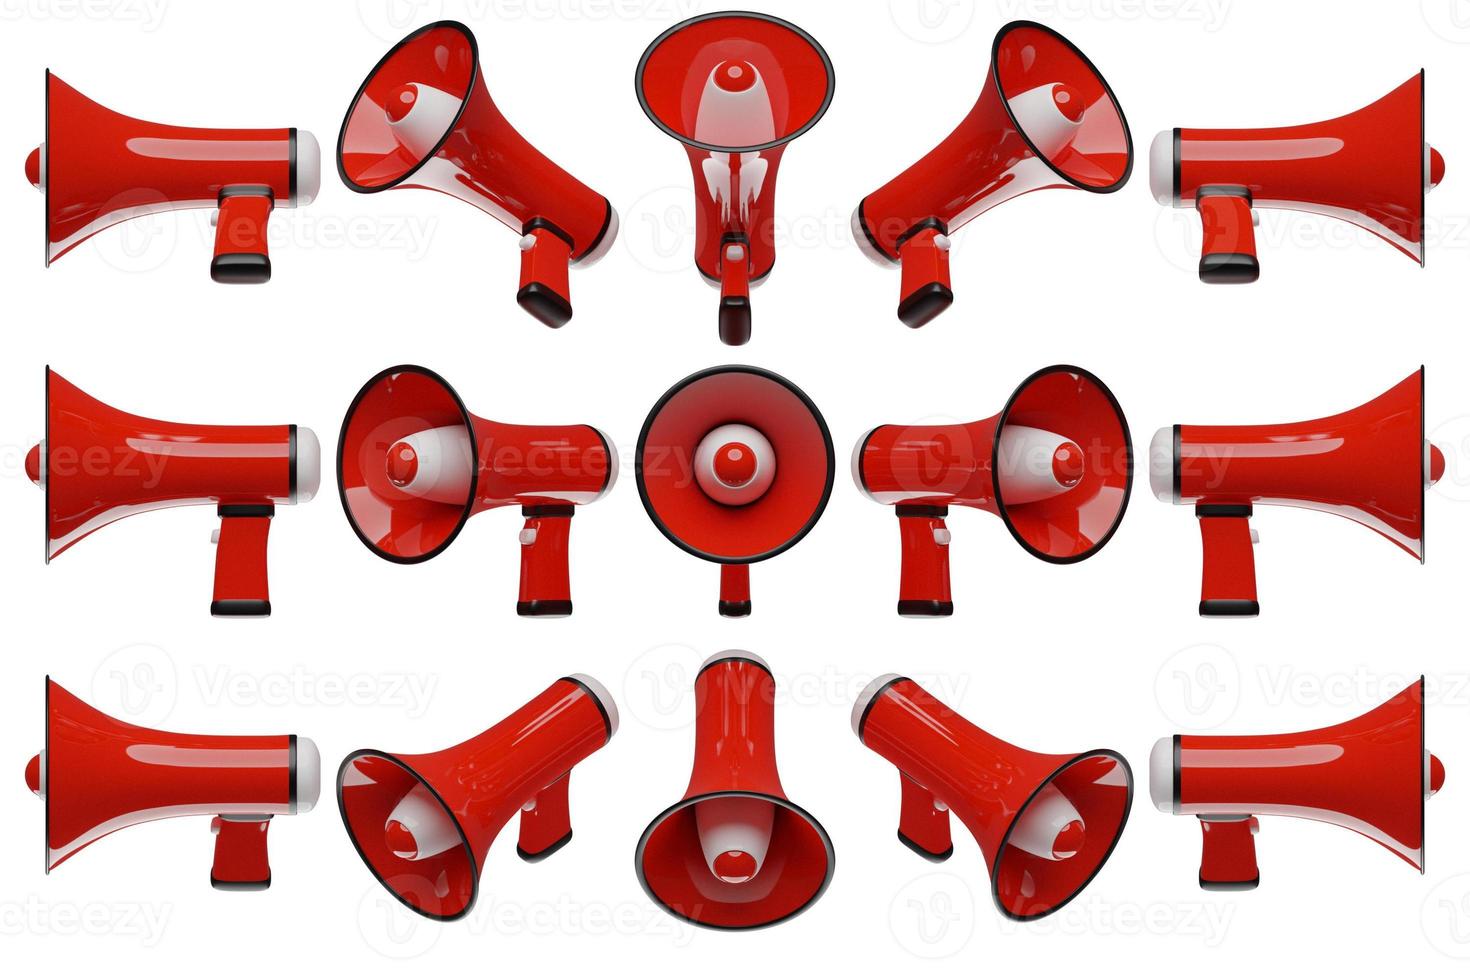 rode cartoon luidspreker van alle kanten op een witte monochrome achtergrond. 3d illustratie van een megafoon. reclamesymbool, promotieconcept. foto